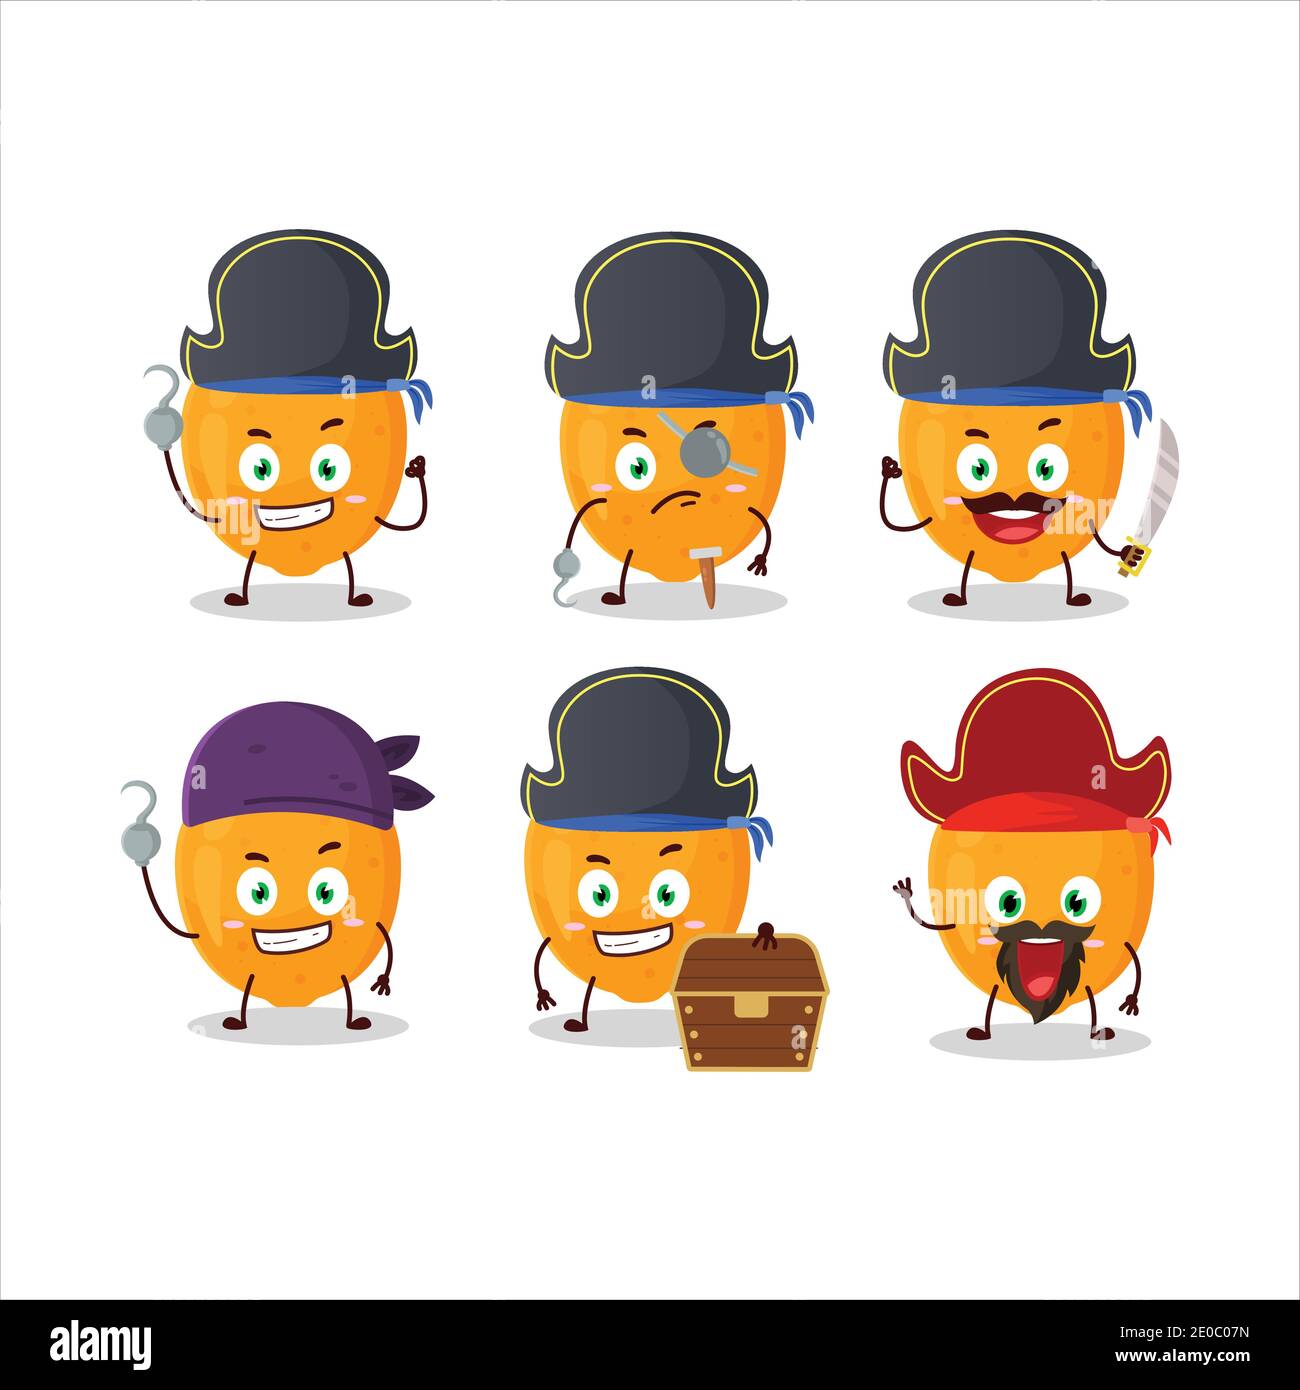 Cartoon-Charakter der orangen Frucht mit verschiedenen Piraten Emoticons Stock Vektor